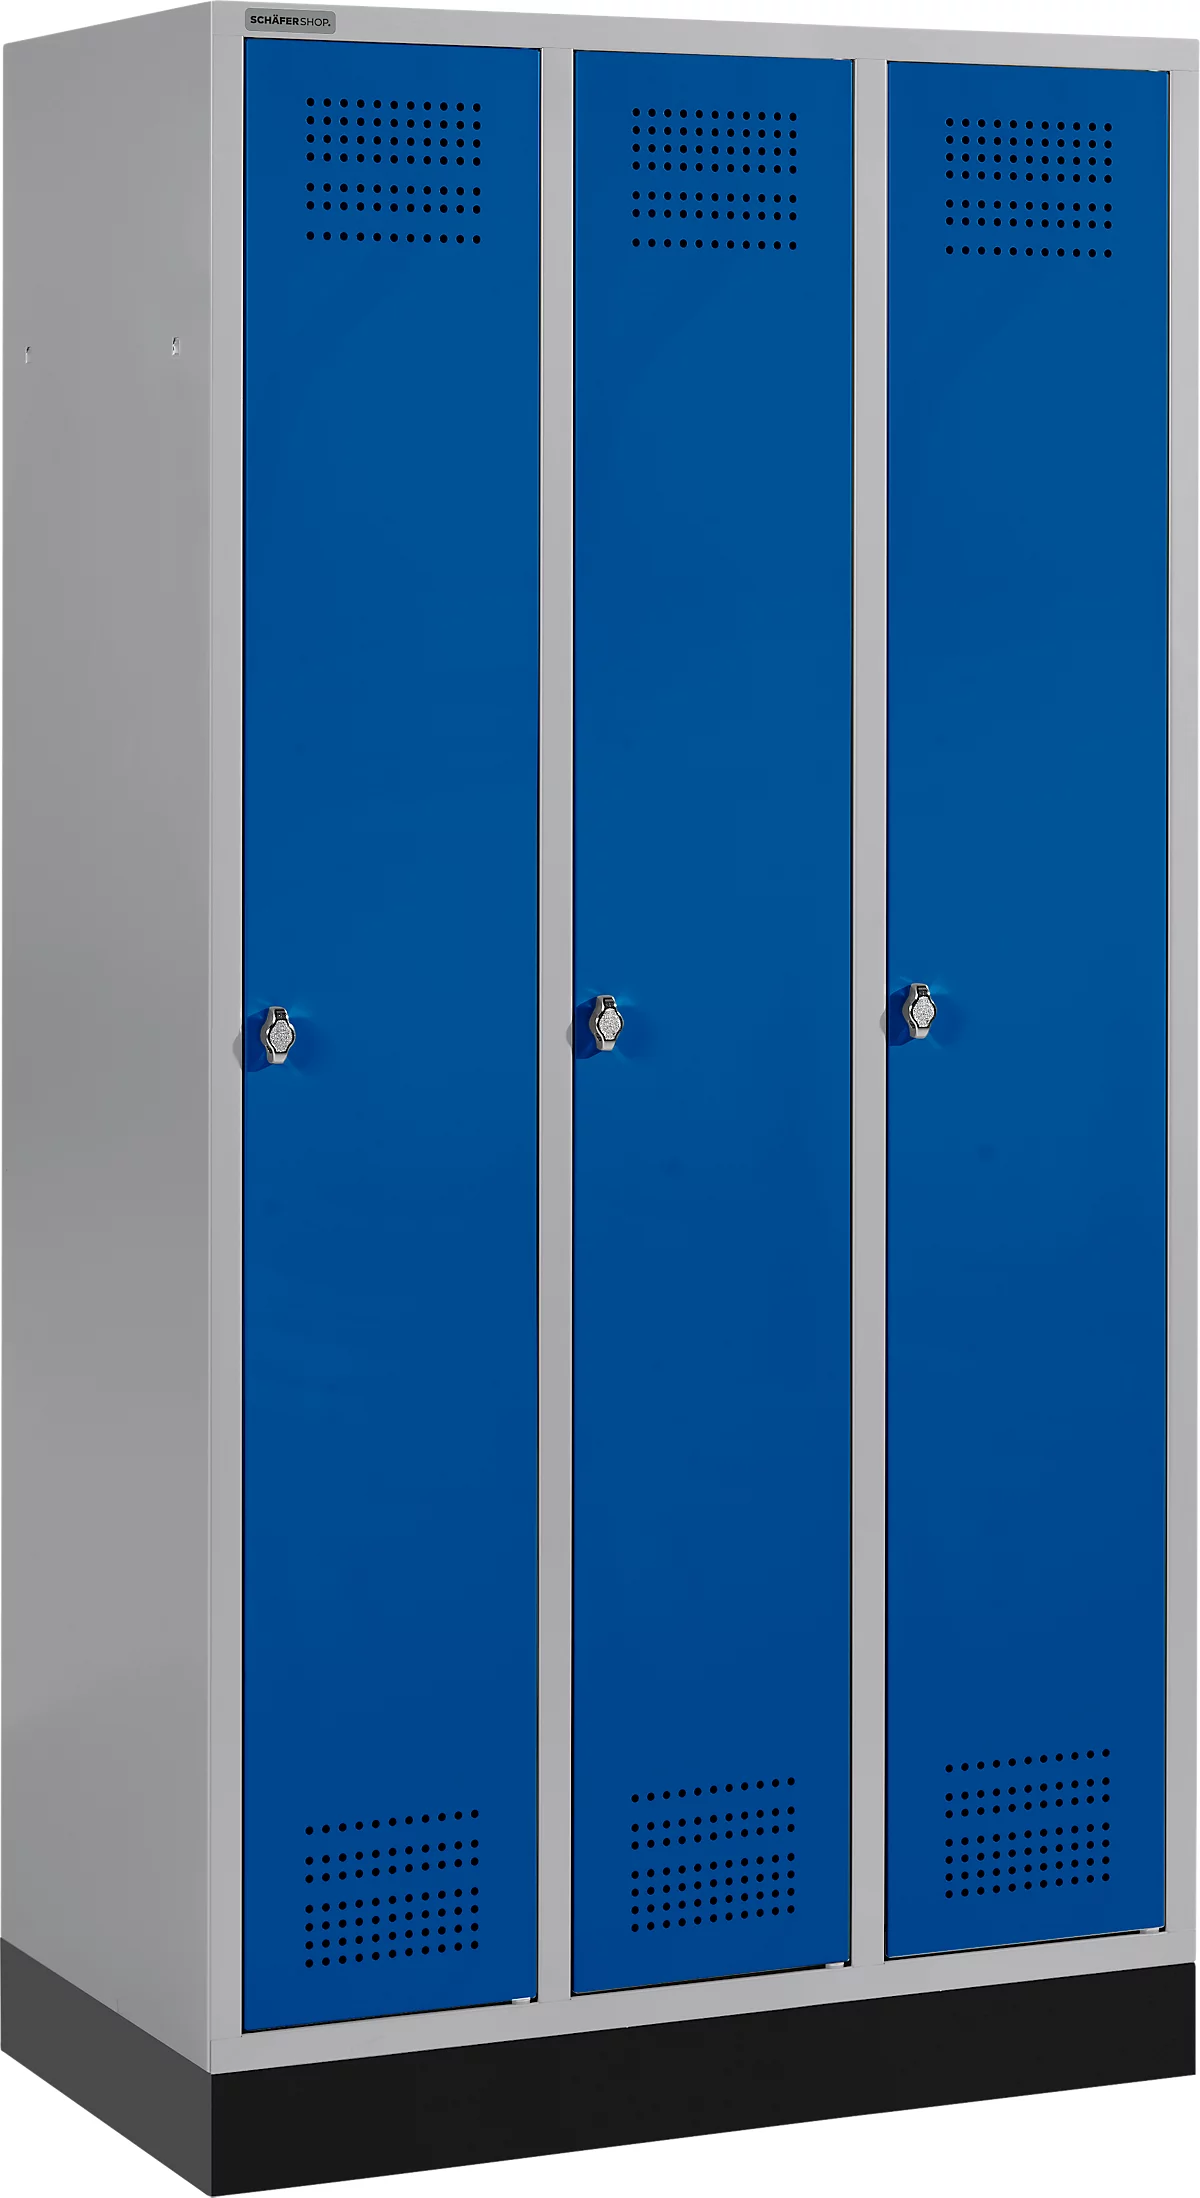 Schäfer Shop Genius Kledinglocker met fitting, 3 compartimenten, veiligheidsdraaigrendelslot, licht zilver/gentiaanblauw